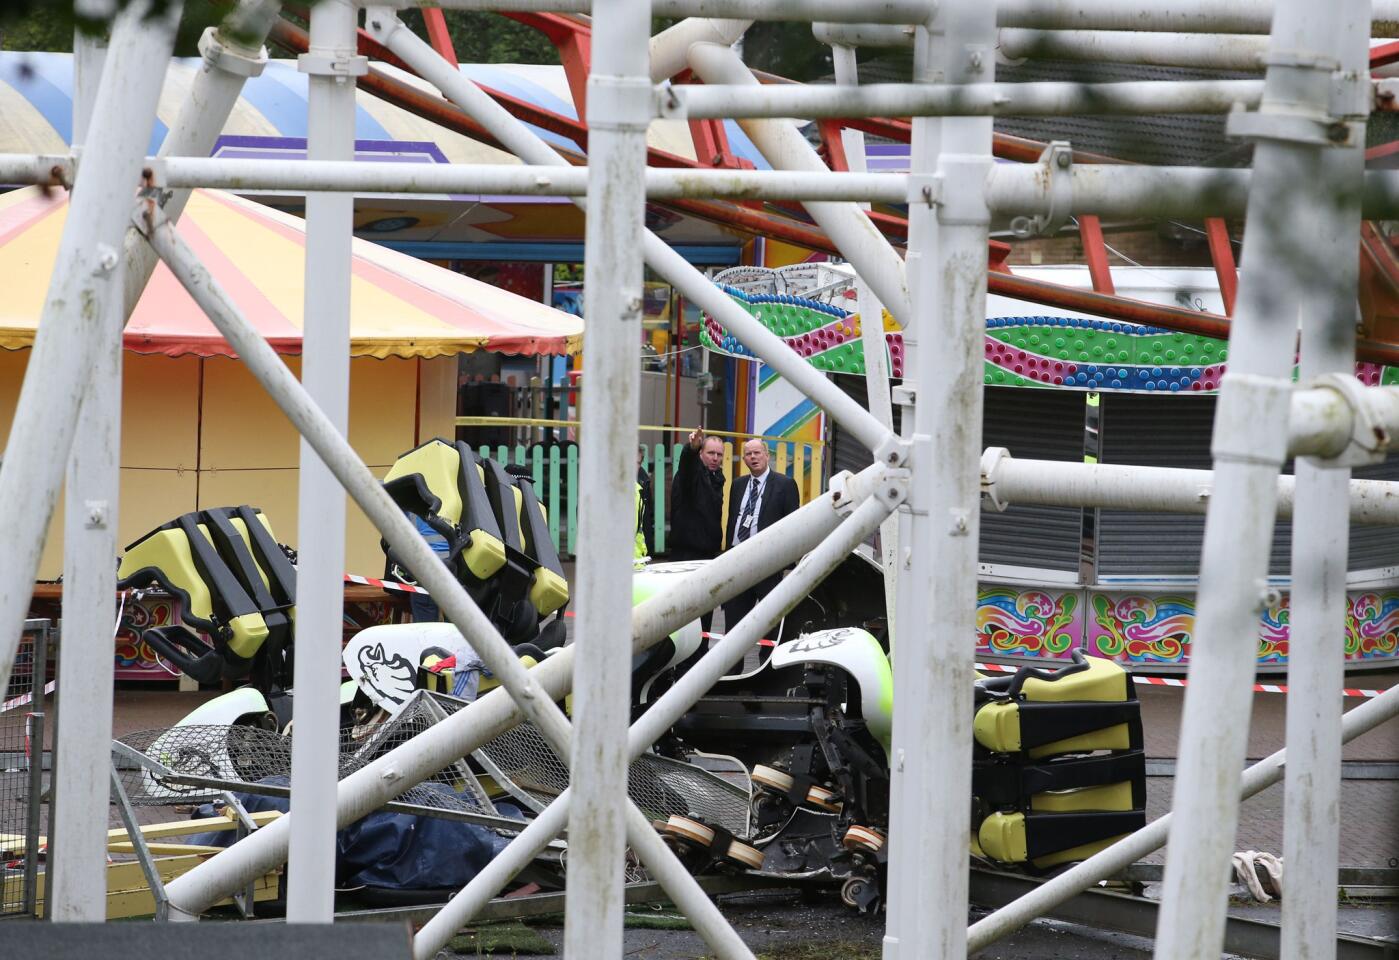 M&D's amusement park rollercoaster crash